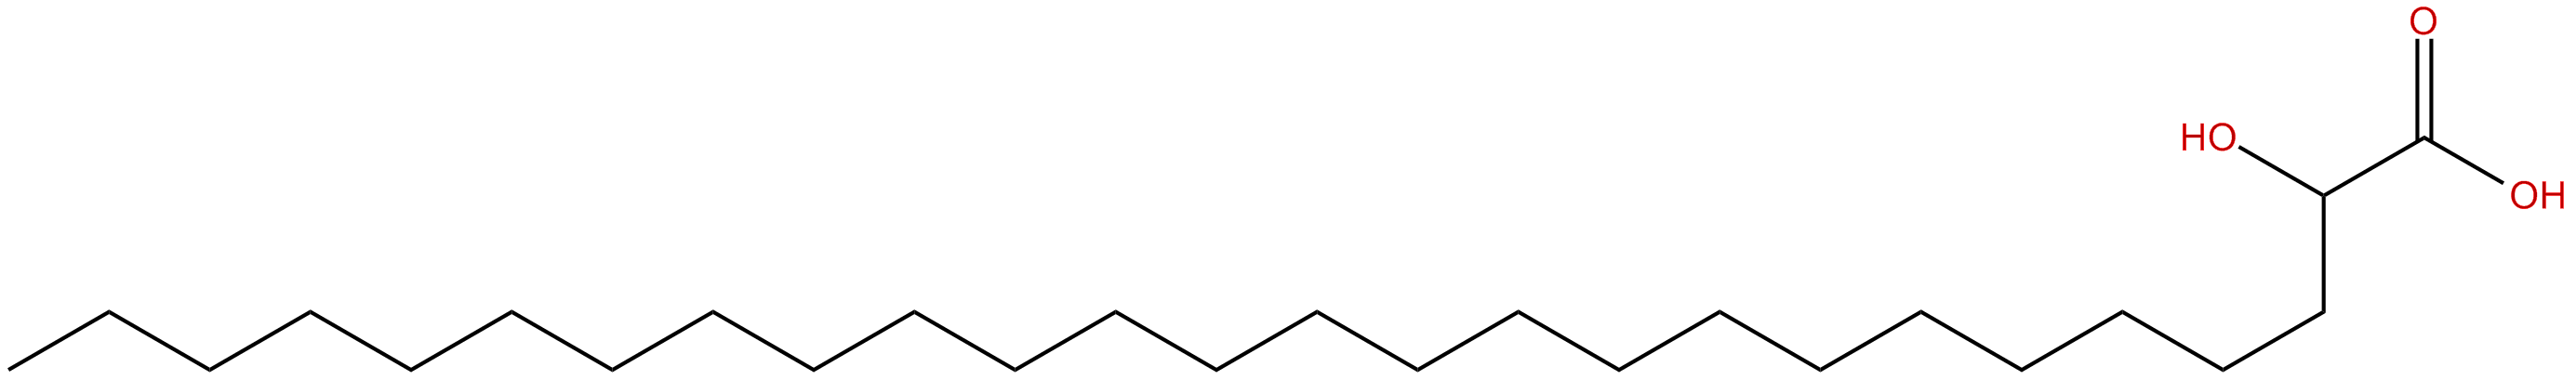 Image of 2-hydroxyhexacosanoic acid